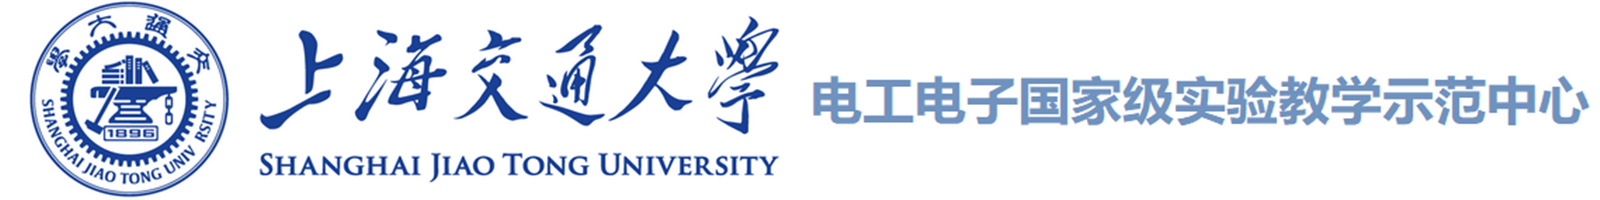 电工电子国家级实验教学示范中心（上海交通大学）